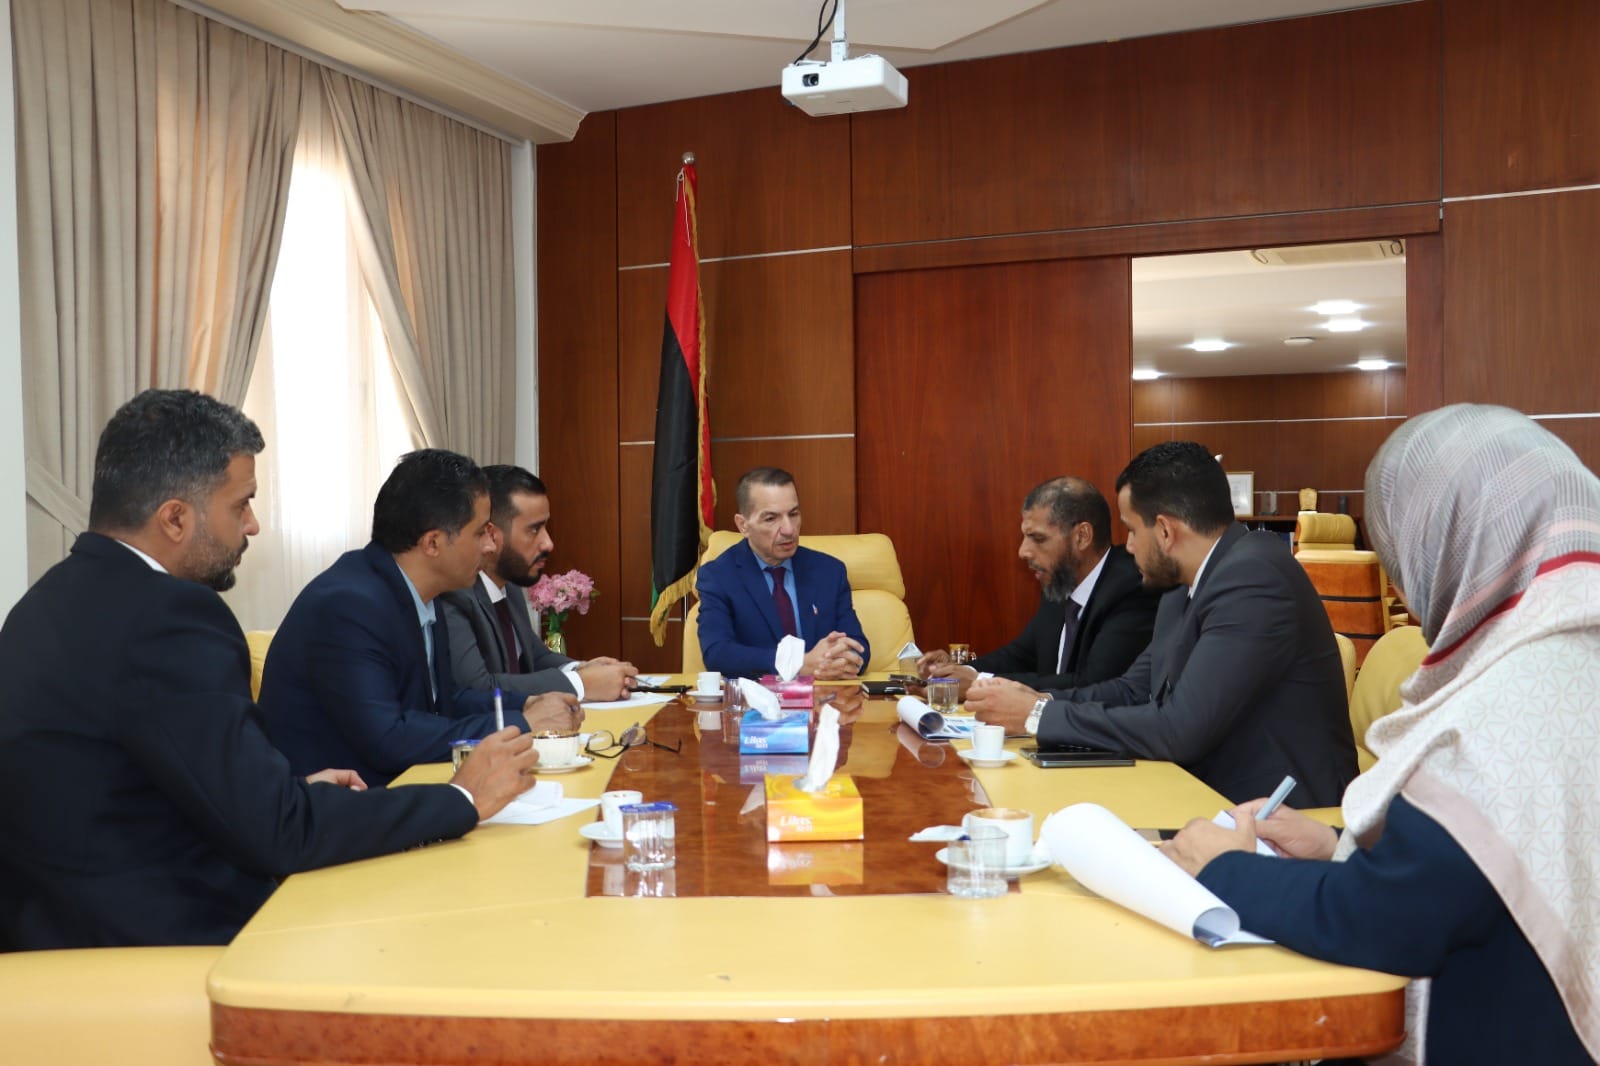  وزير التخطيط  يتابع مع رئيس مجلس ادارة جهاز الطاقات المتجددة  تنفيذ الاستراتيجية الوطنية وكفاءة الطاقة .